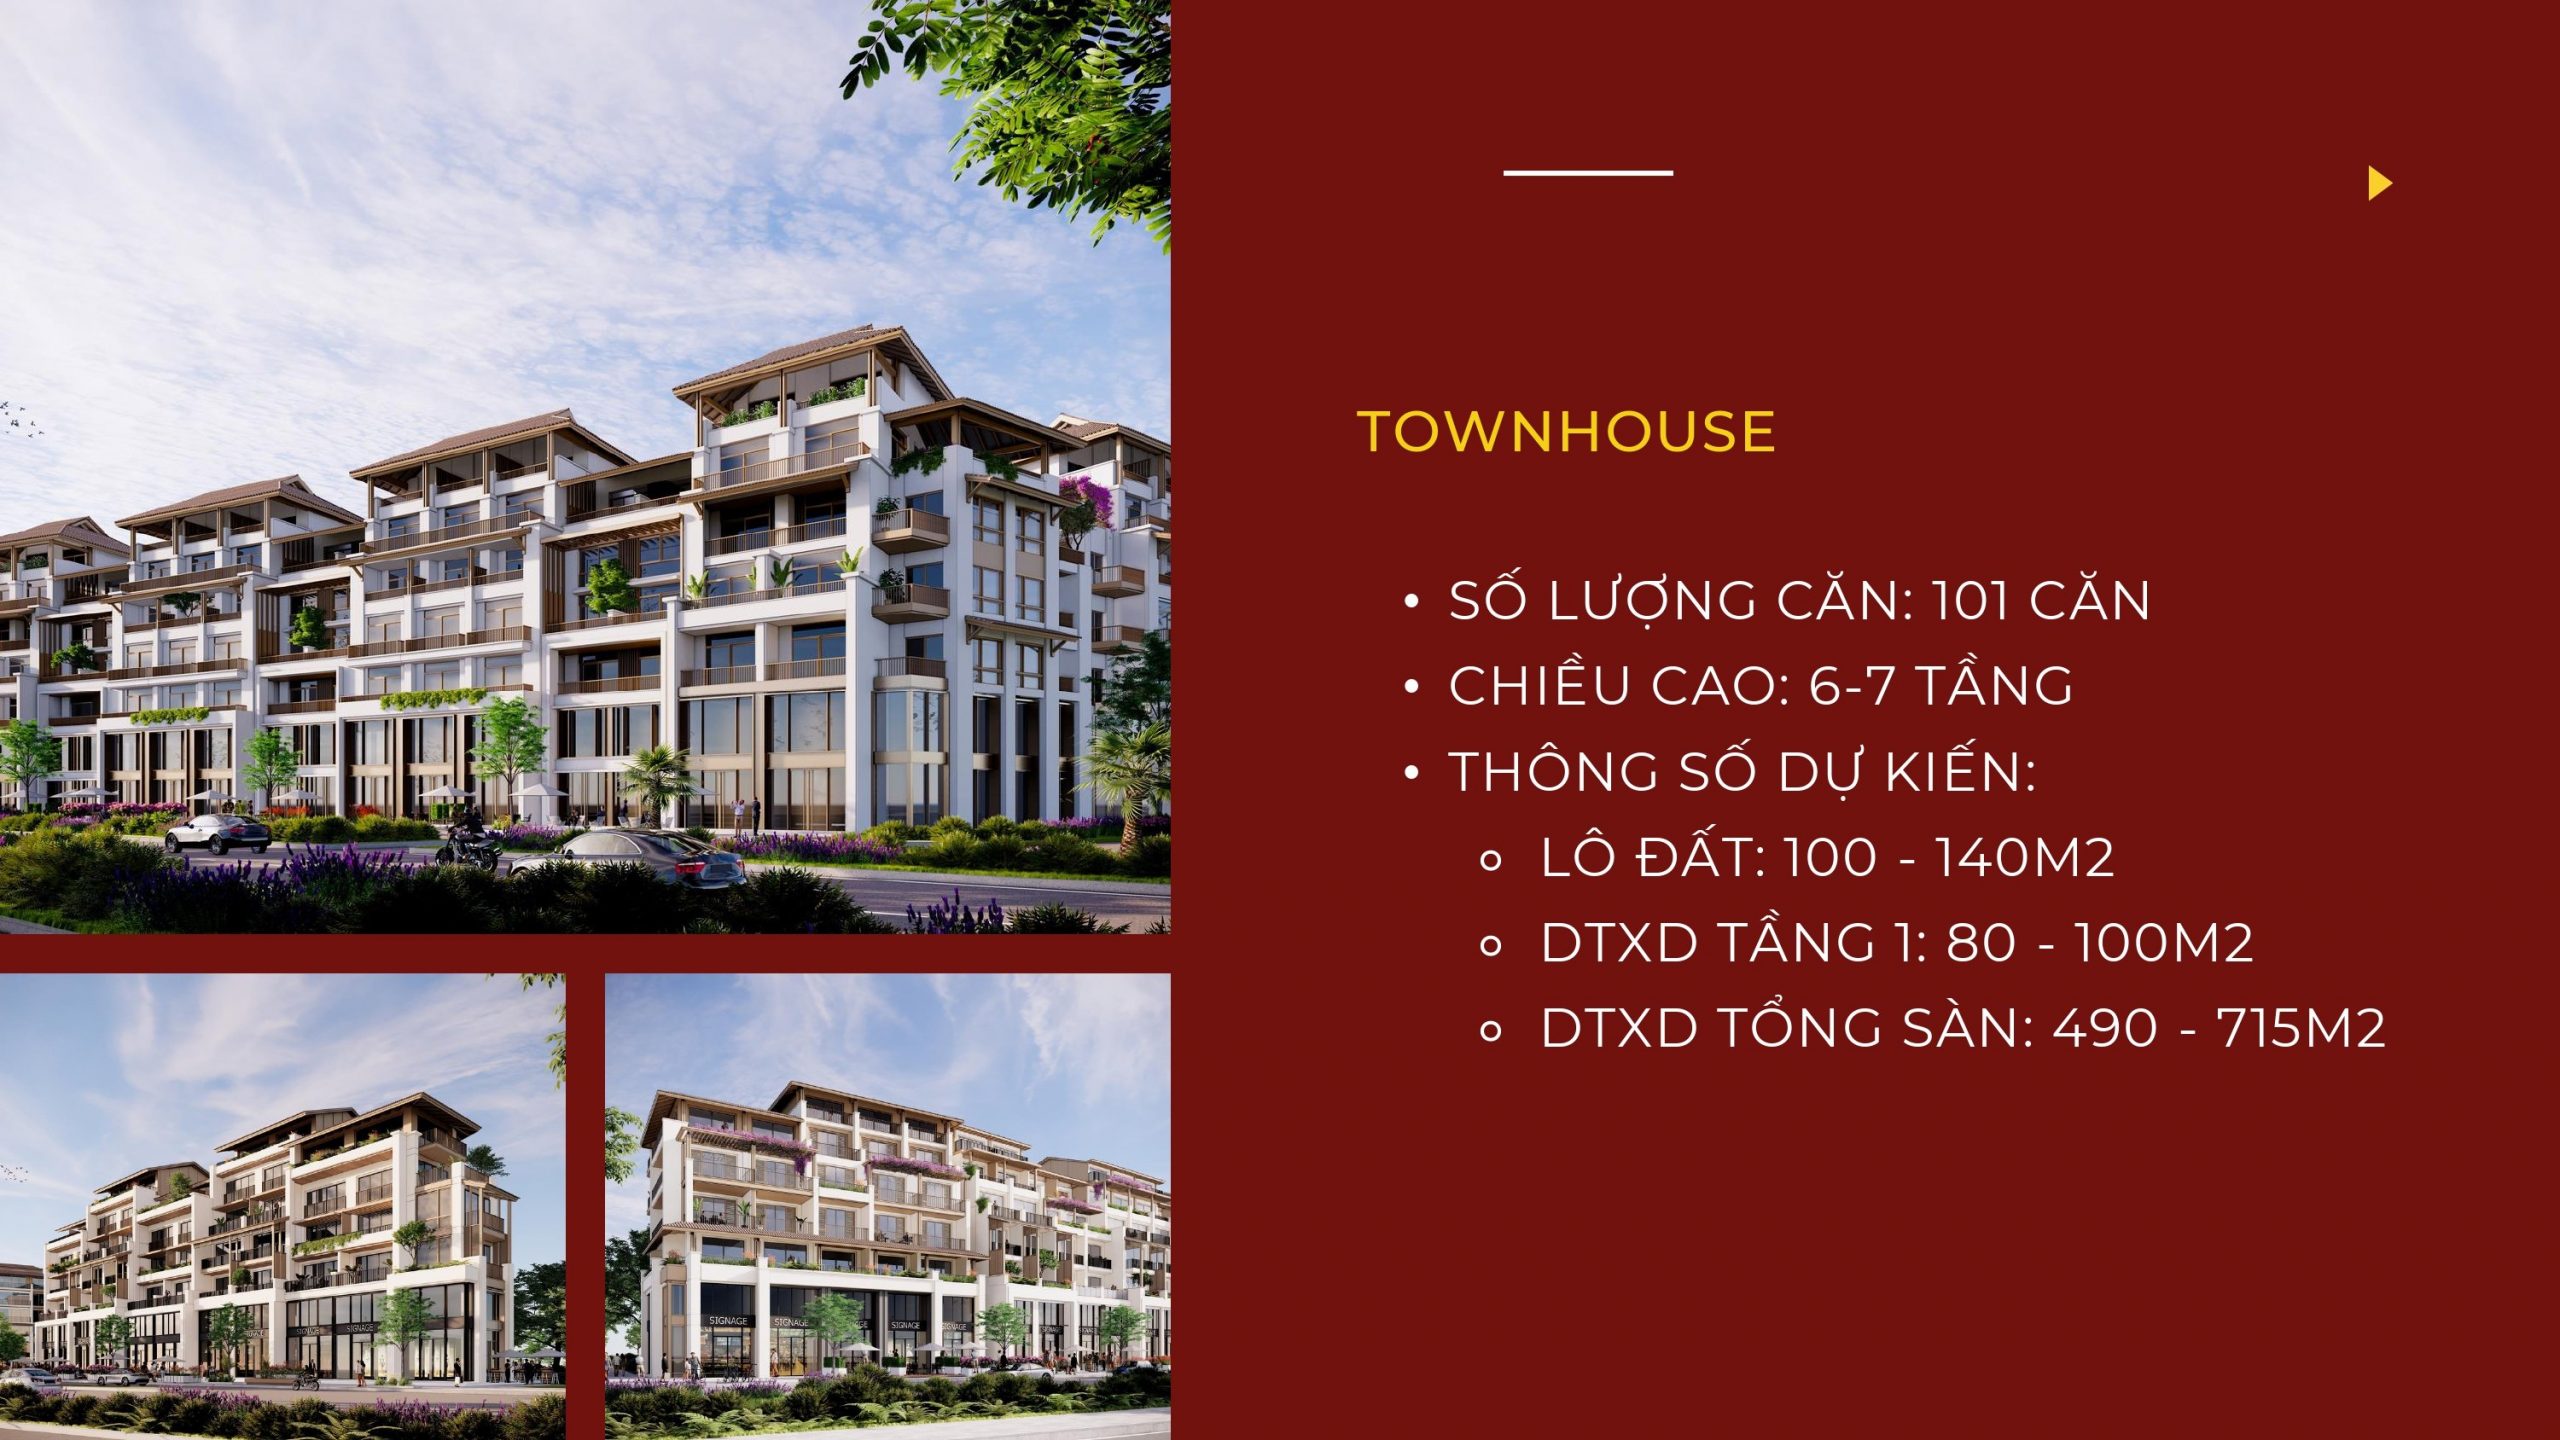 Sun Cosmo Residence Da Nang: Dự án căn hộ - biệt thự - nhà phố tại Đà Nẵng 3